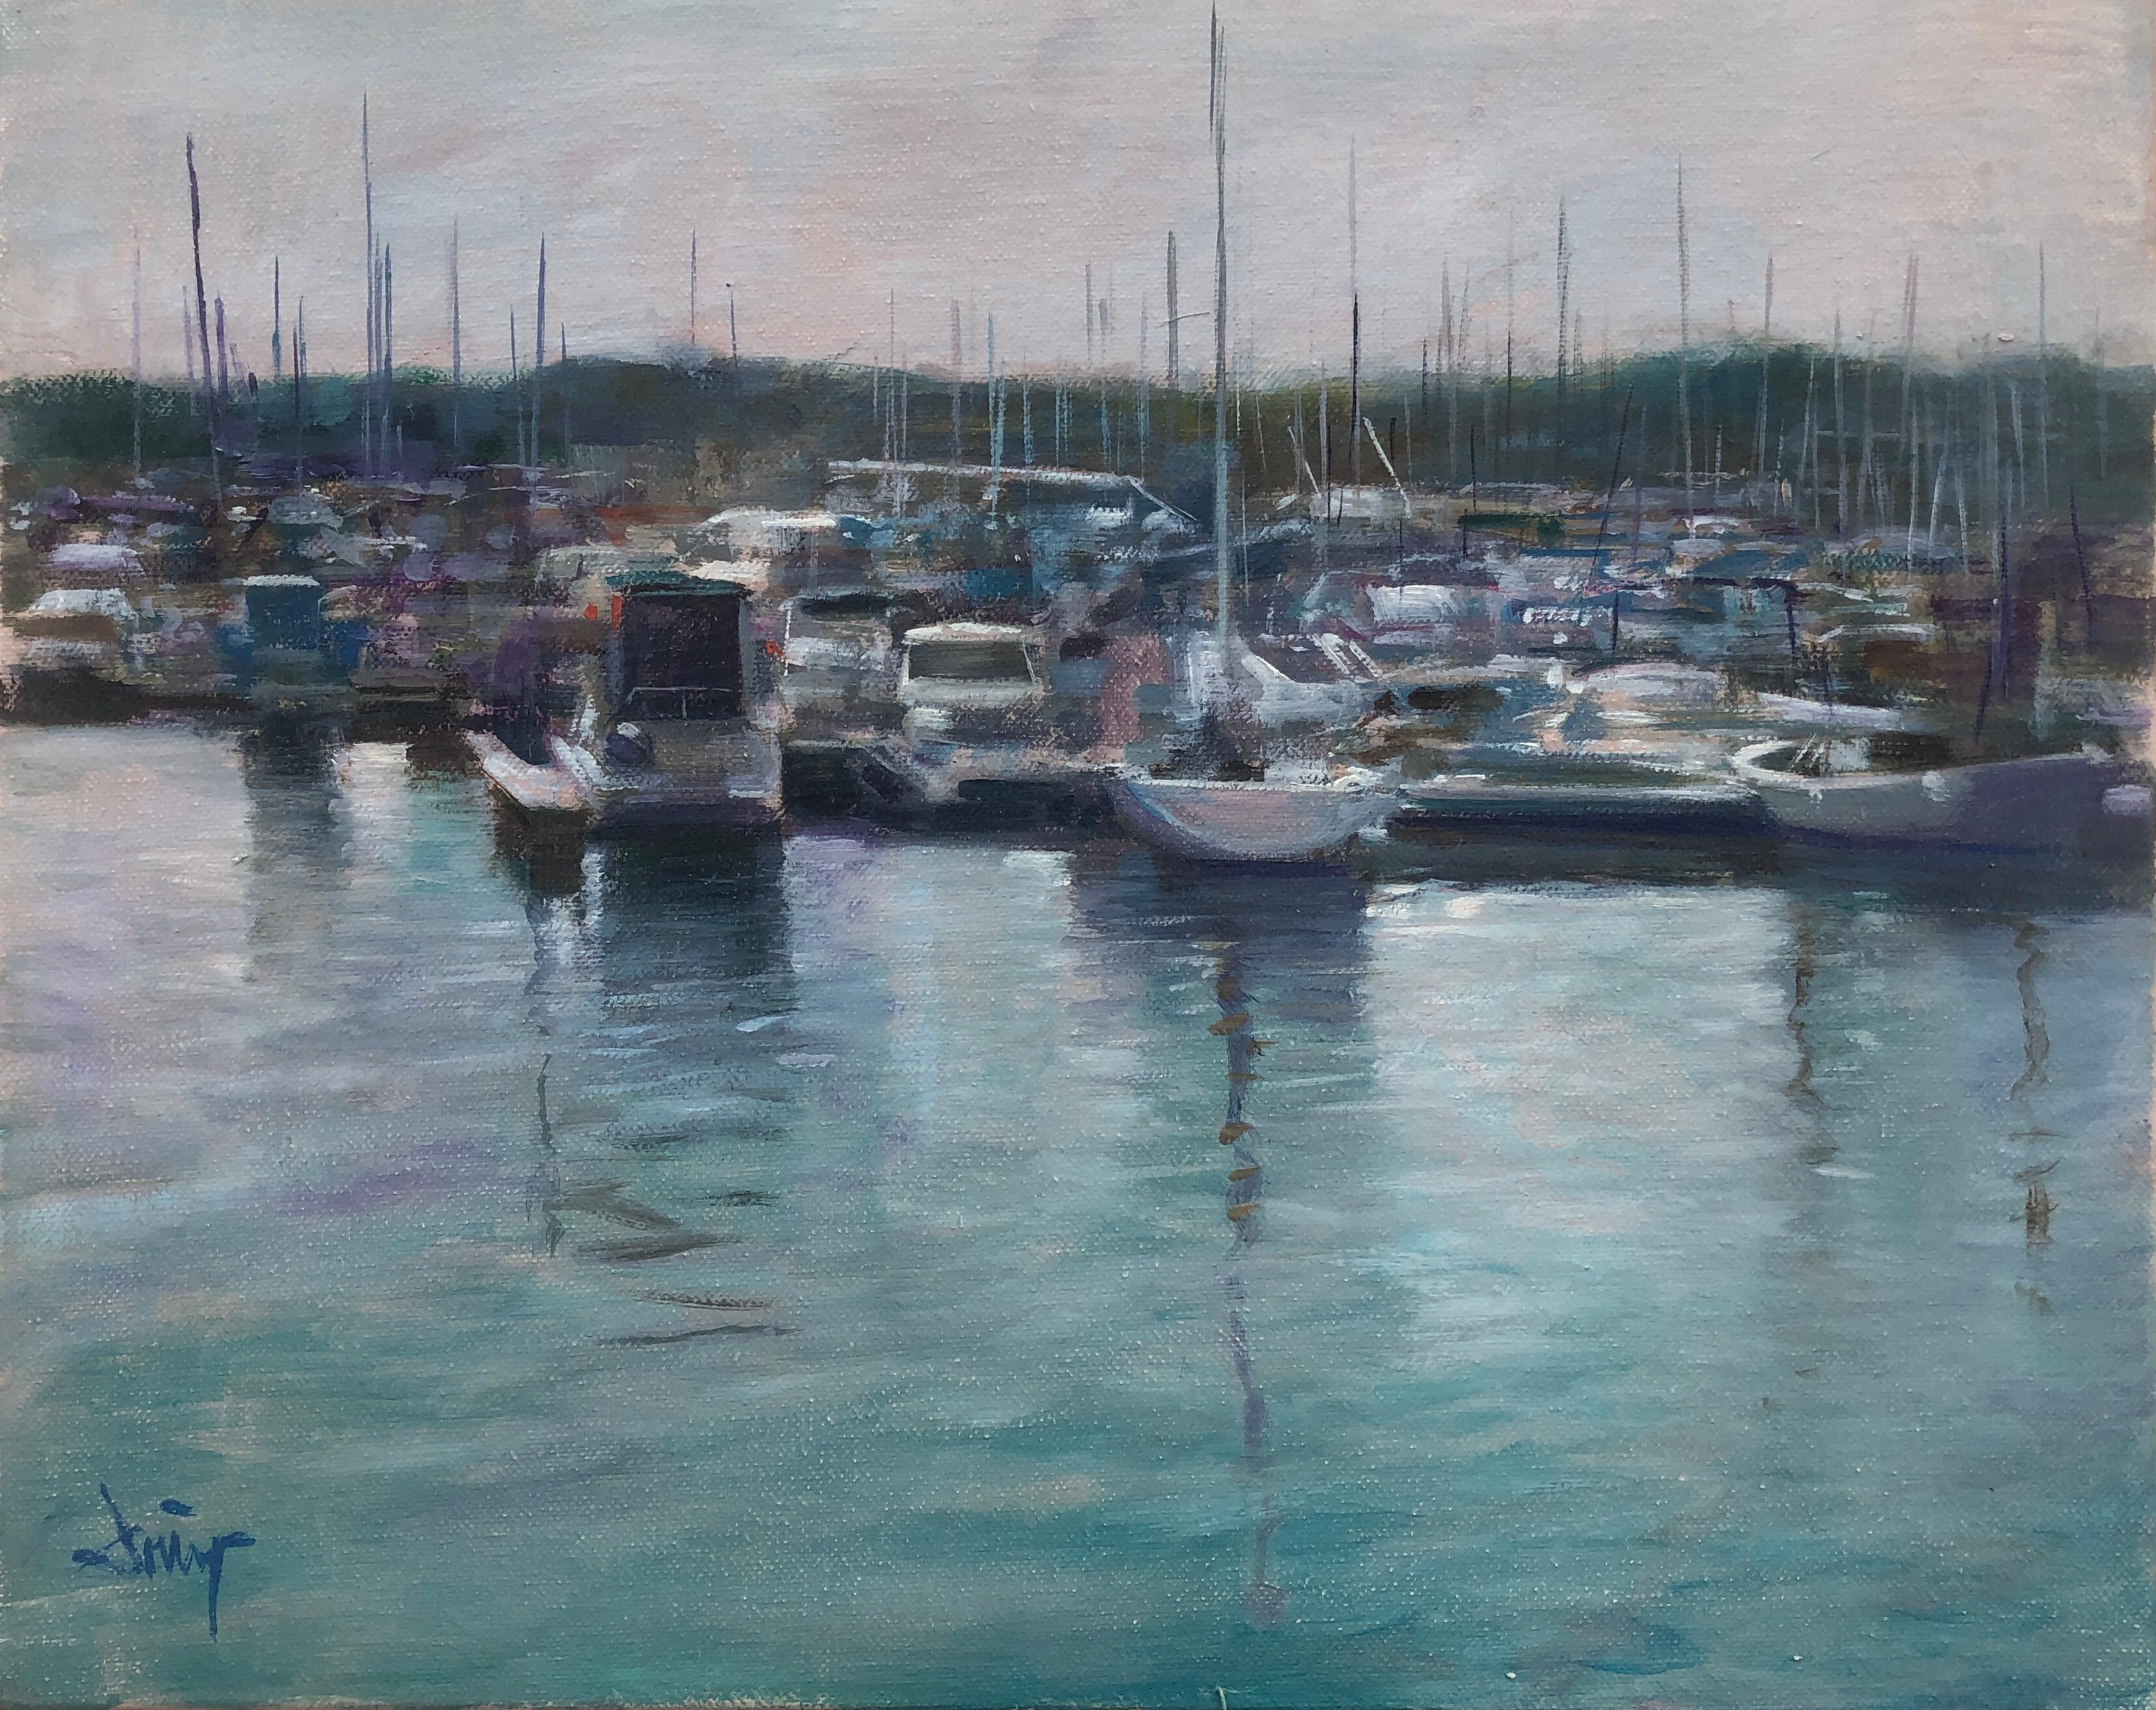 Landscape Painting Domingo Alvarez Gomez - Paysage marin Espagne huile sur toile peinture bateaux